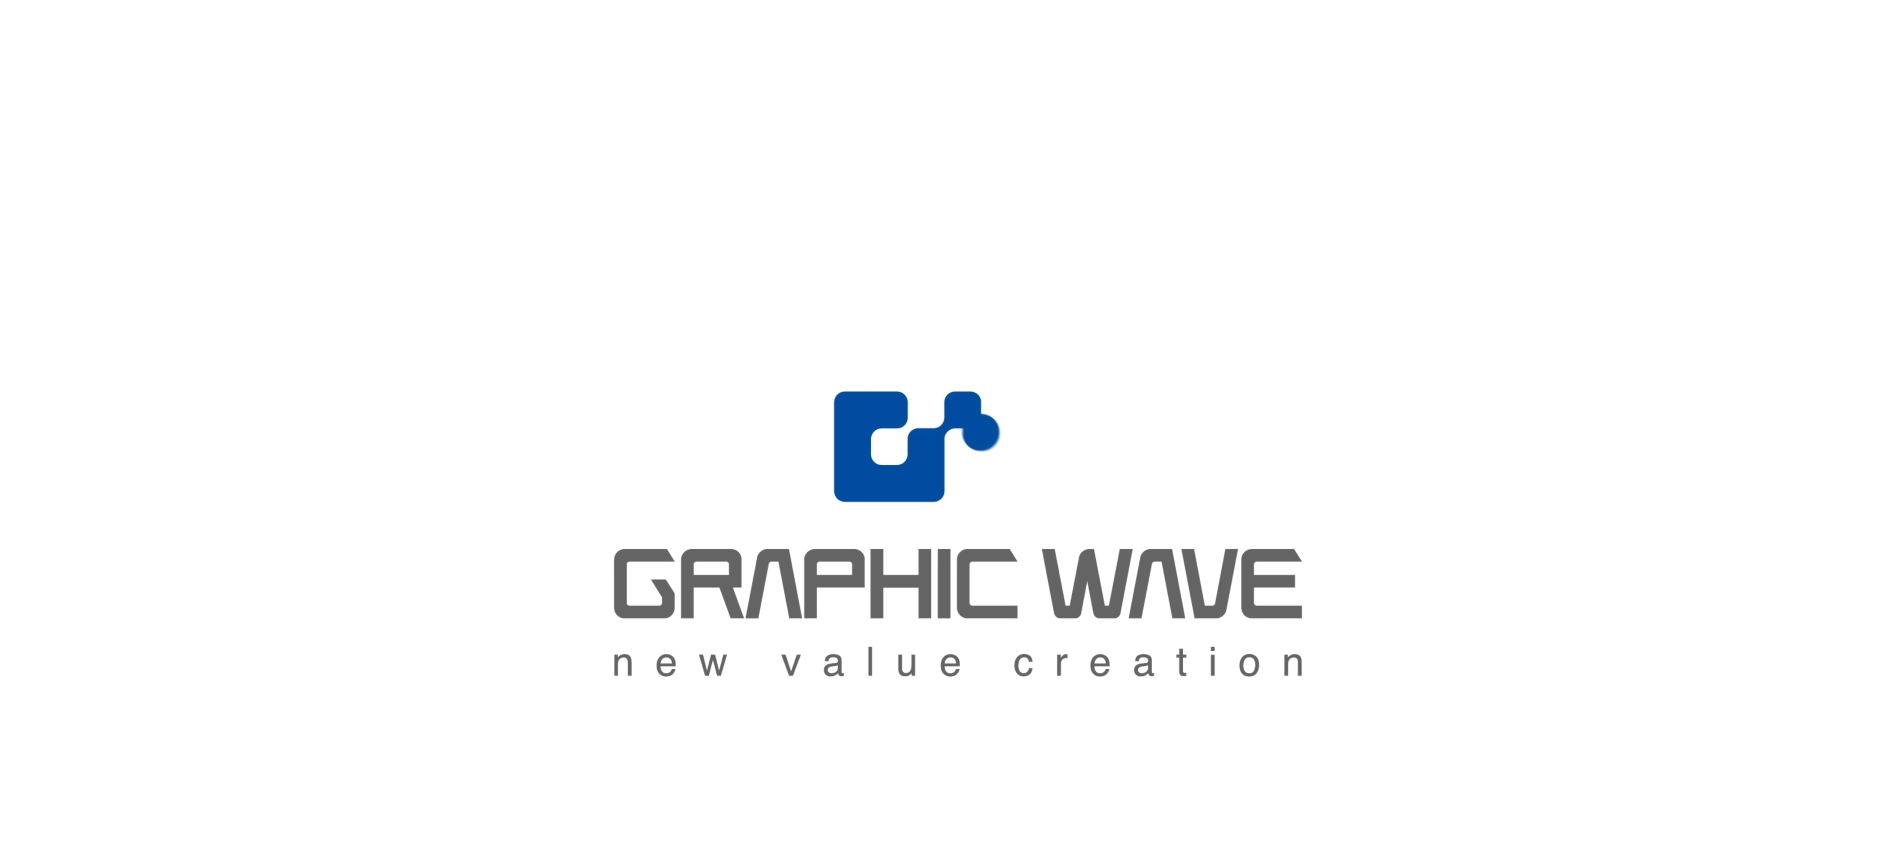 株式会社GRAPHIC WAVEの株式会社GRAPHIC WAVE:動画制作・映像制作サービス